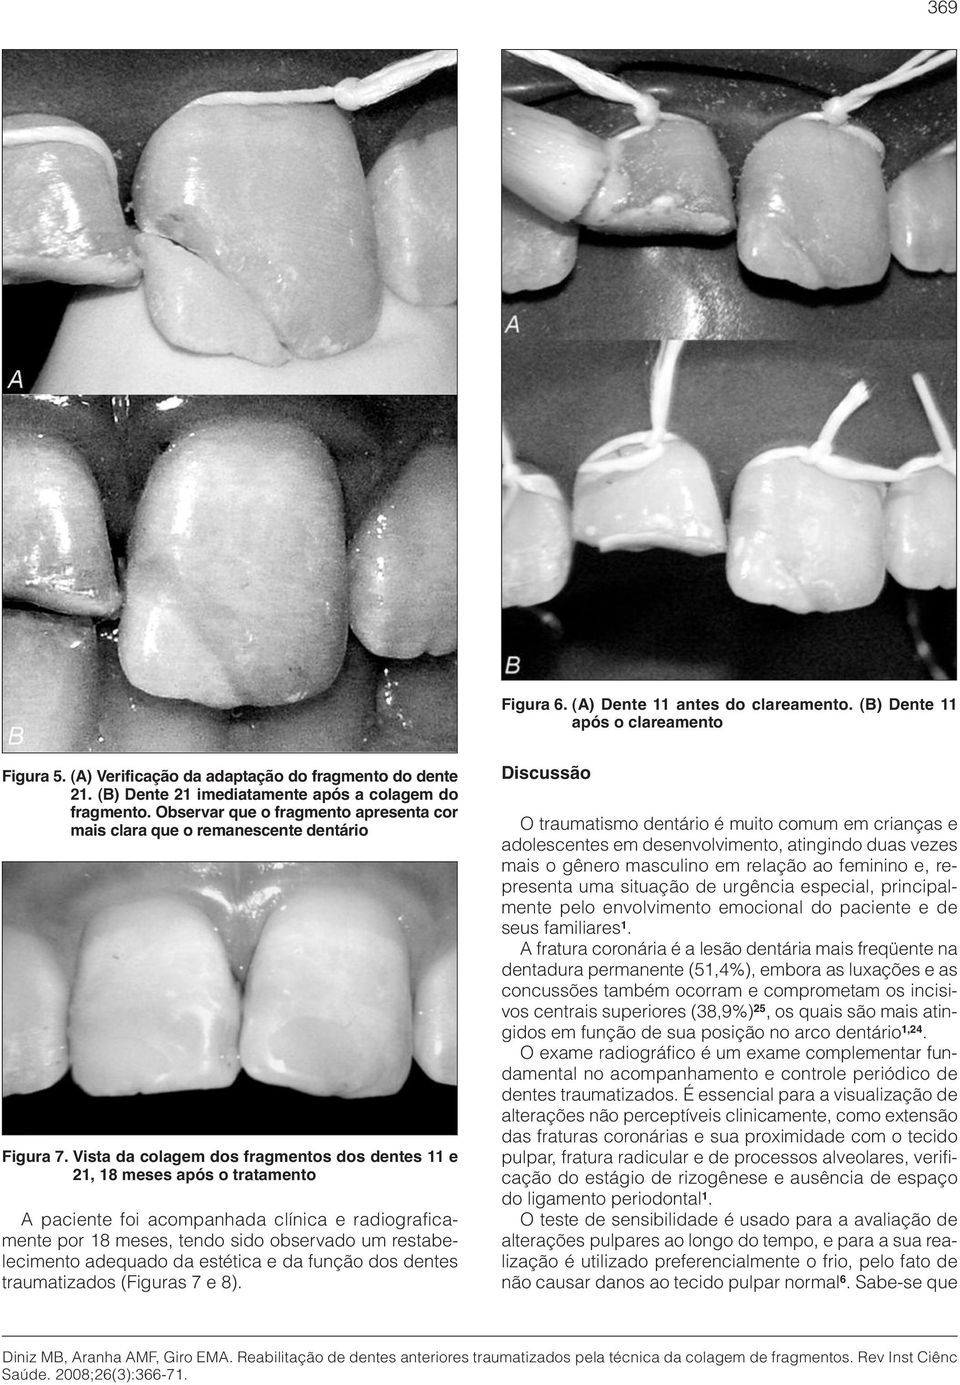 Vista da colagem dos fragmentos dos dentes 11 e 21, 18 meses após o tratamento A paciente foi acompanhada clínica e radiograficamente por 18 meses, tendo sido observado um restabelecimento adequado